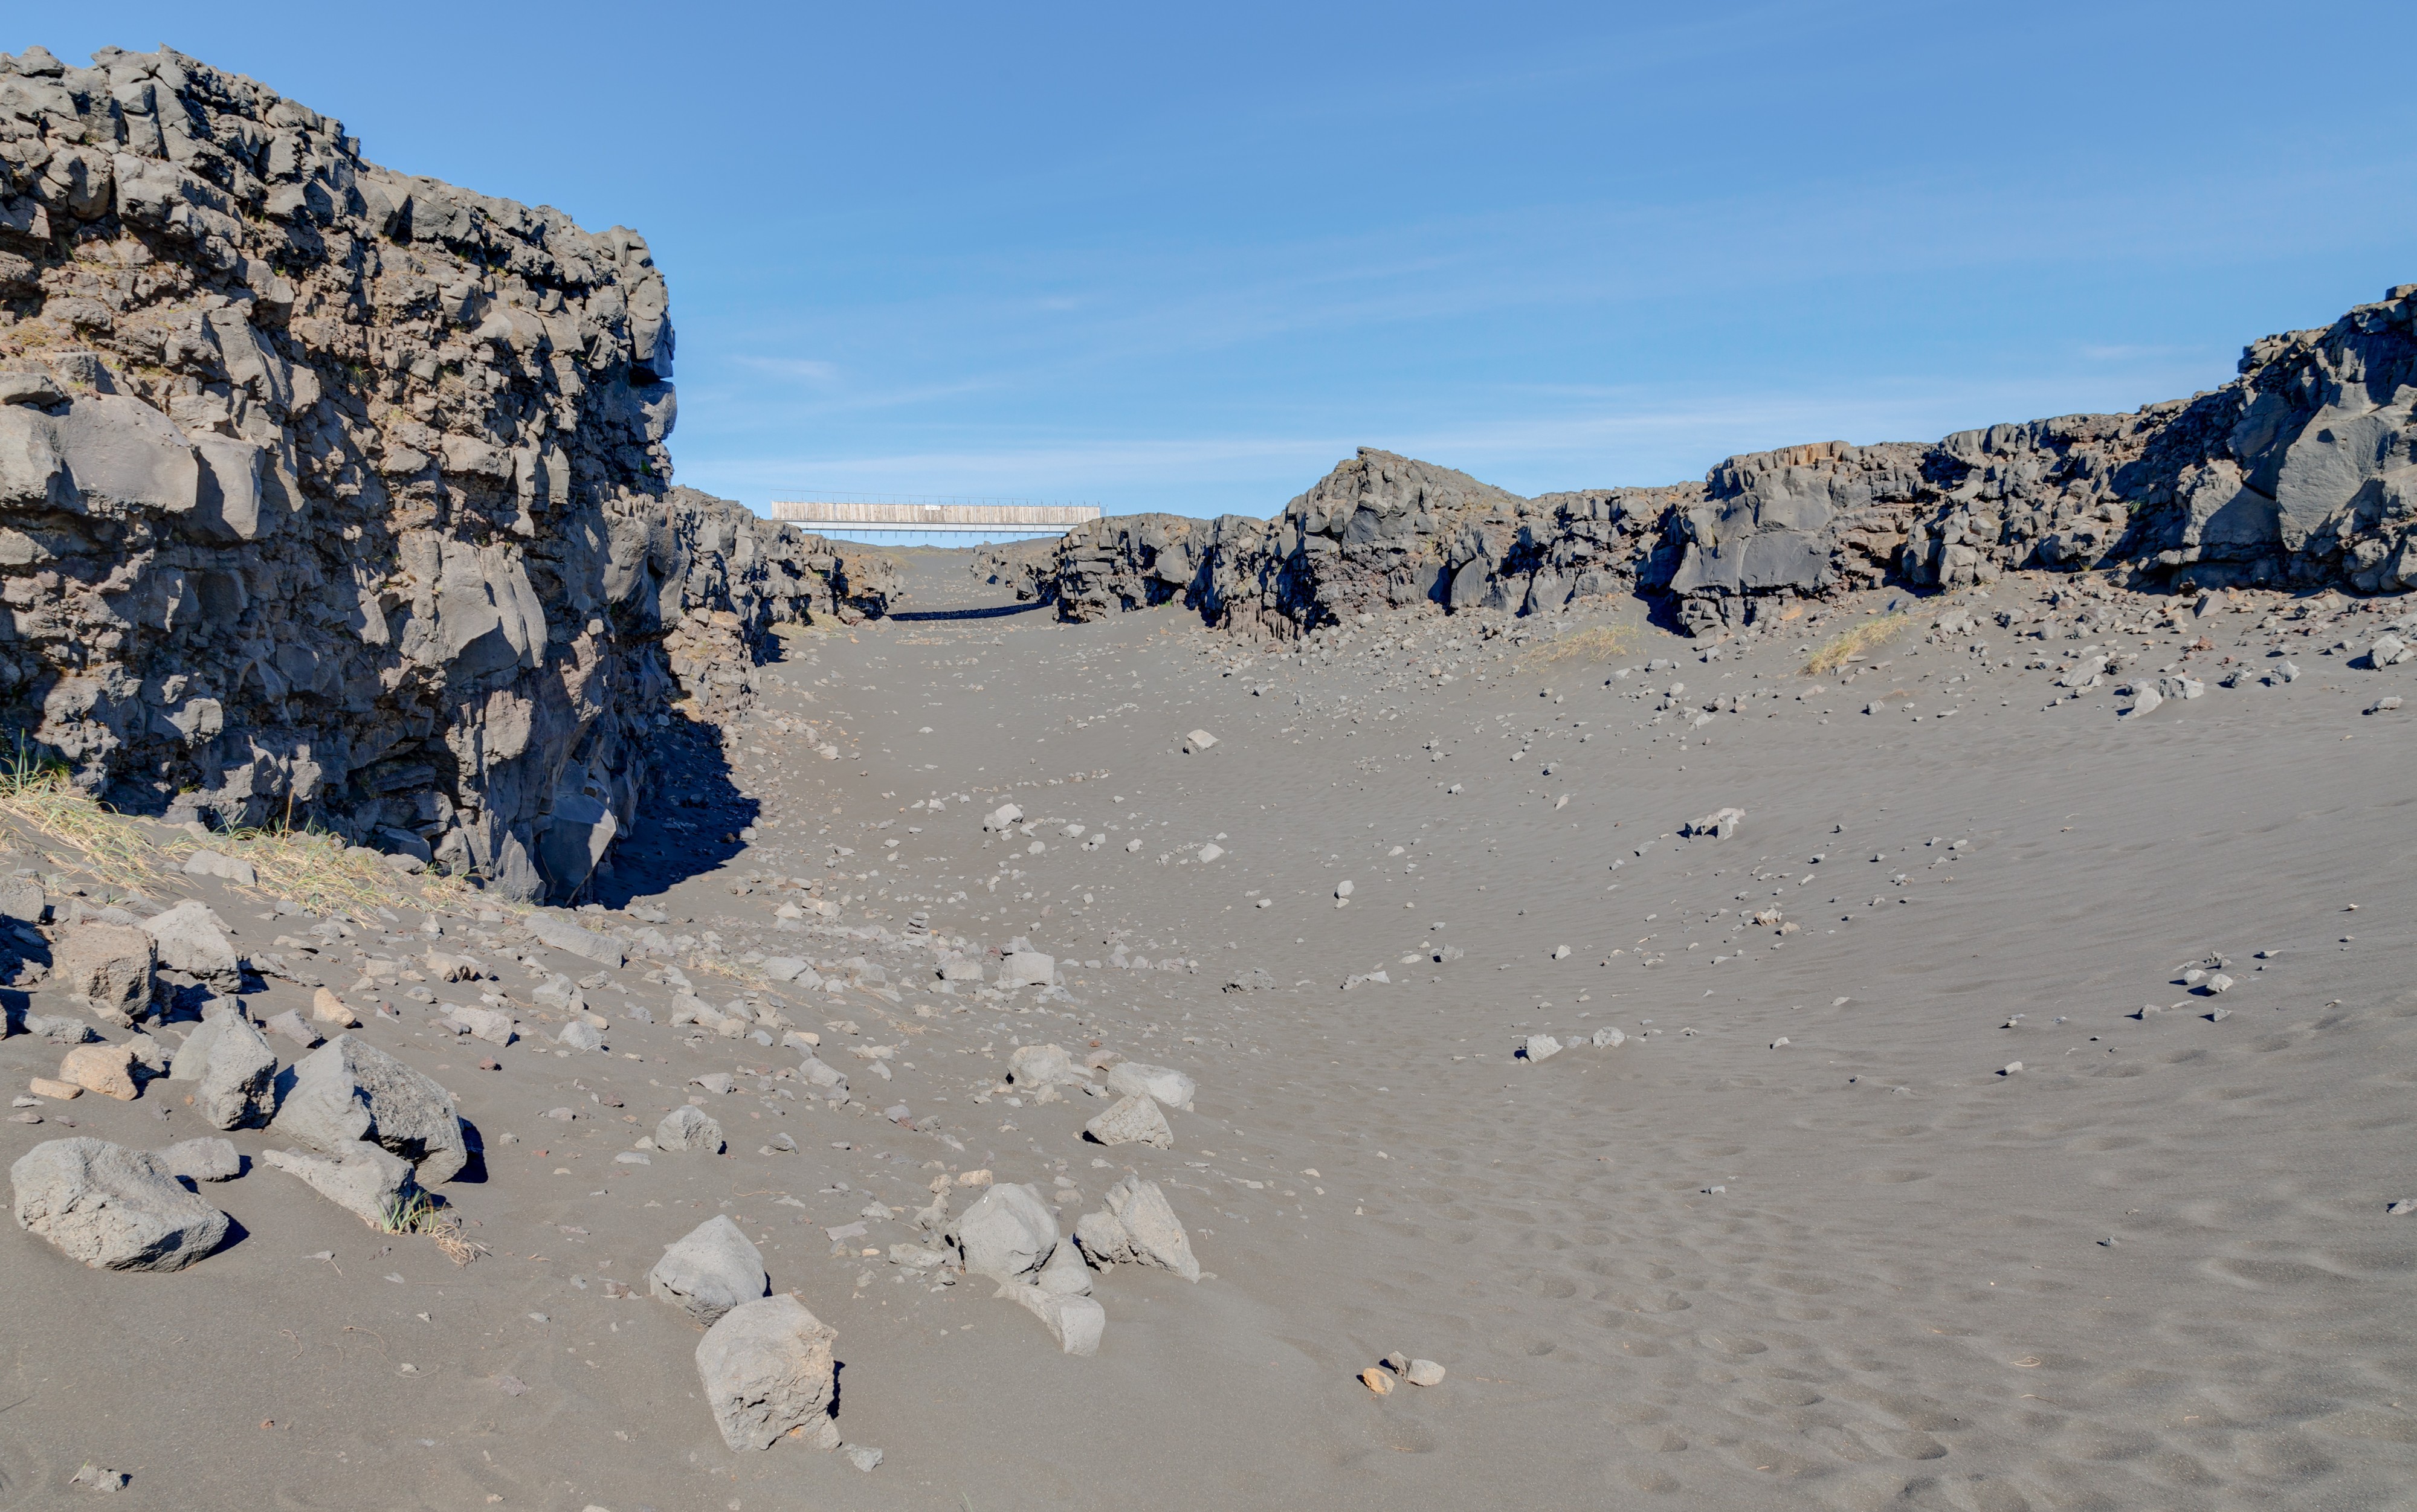 Placas tectónicas de Eurasia y Norteamérica, Suðurnes, Islandia, 2014-08-13, DD 026-028 HDR